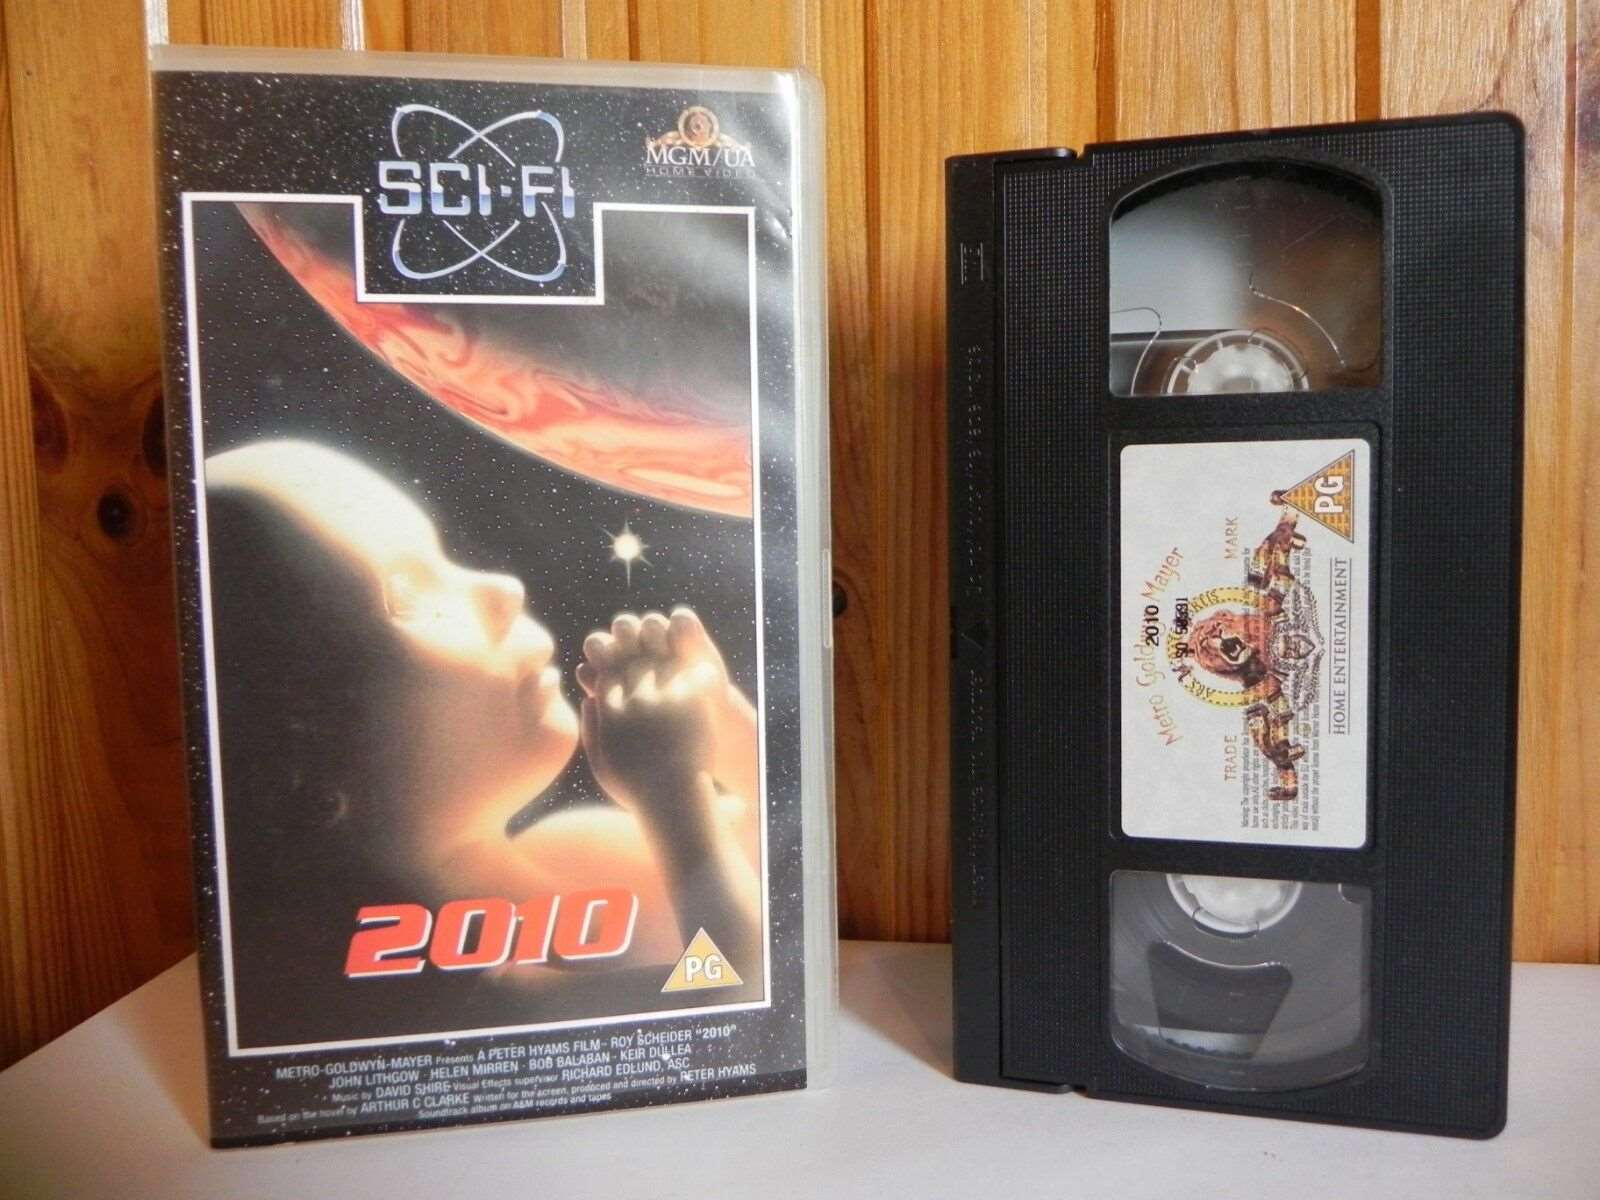 2010 - MGM/UA - Sci-Fi - Roy Scheider - John Lithgow - Helen Mirren - Pal VHS-